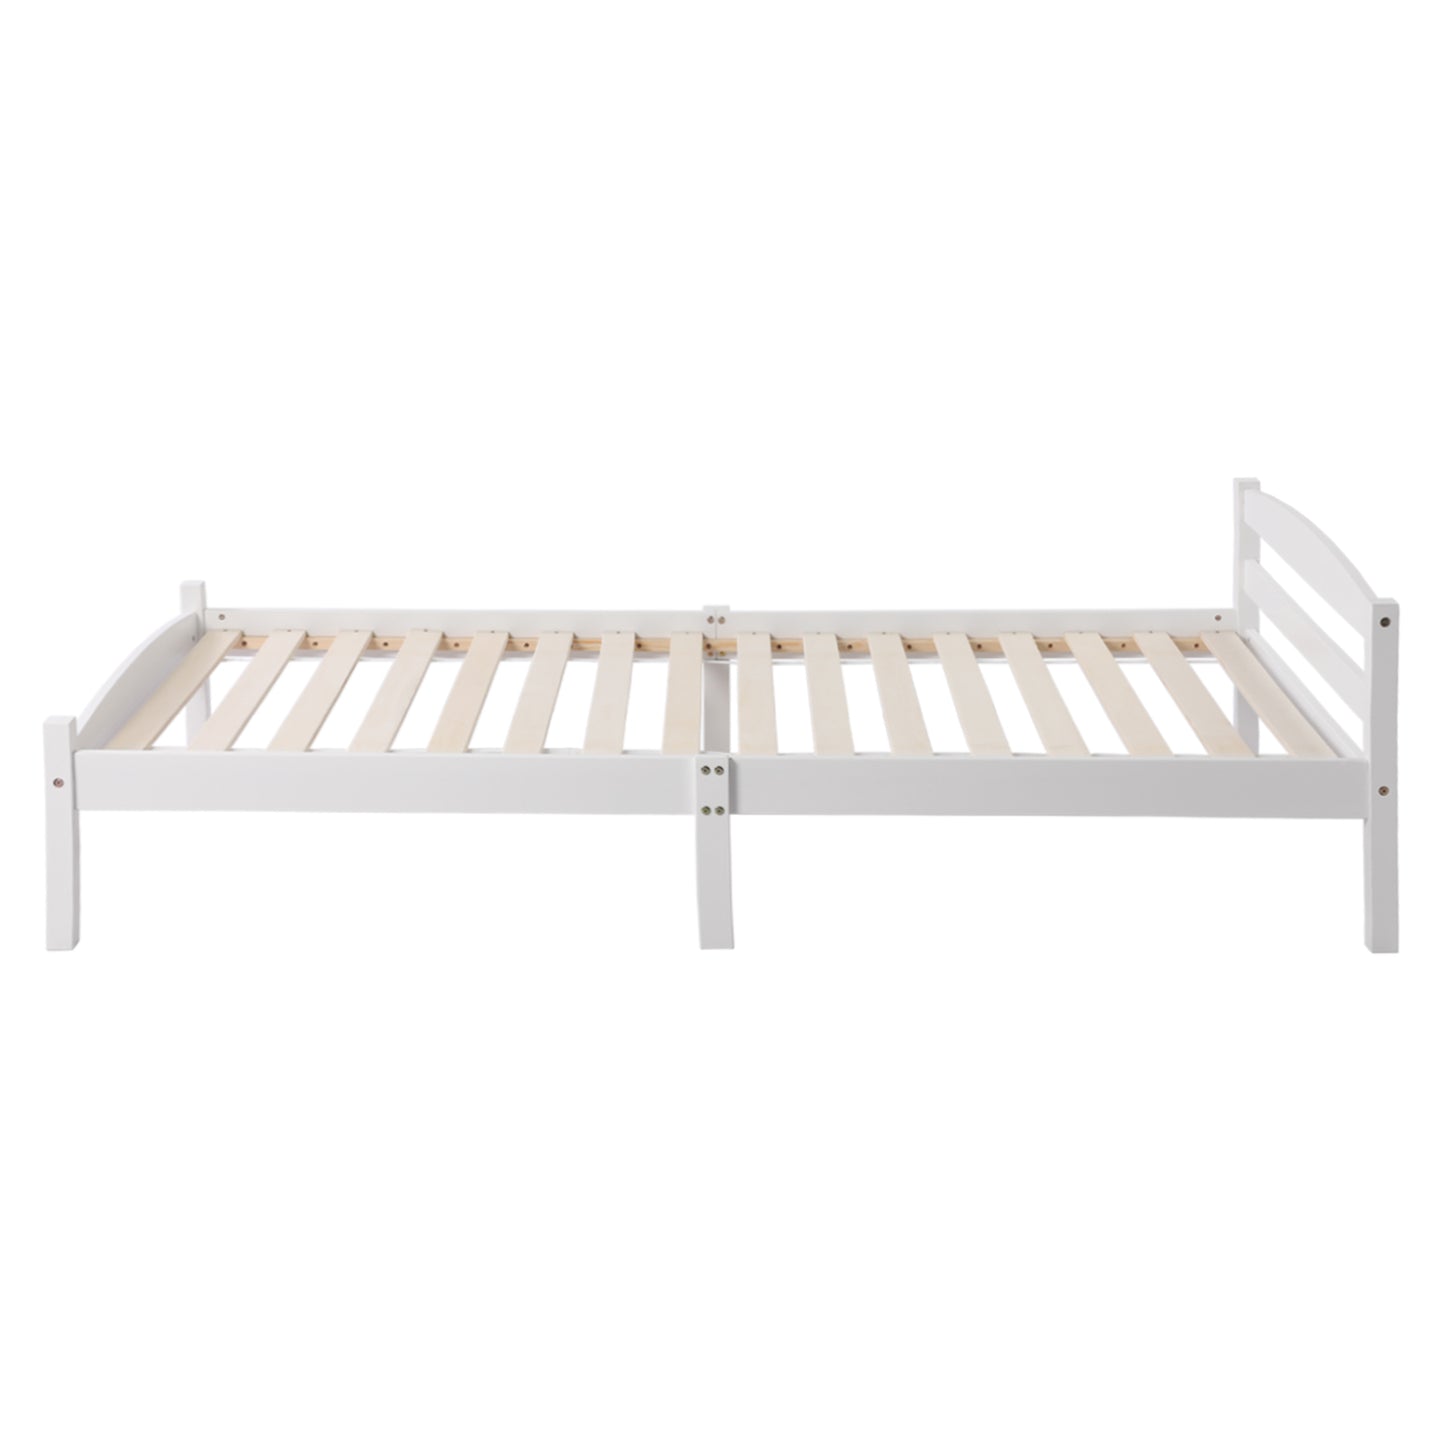 BIGLIA Single Pine Wooden Bed 96*198cm - White